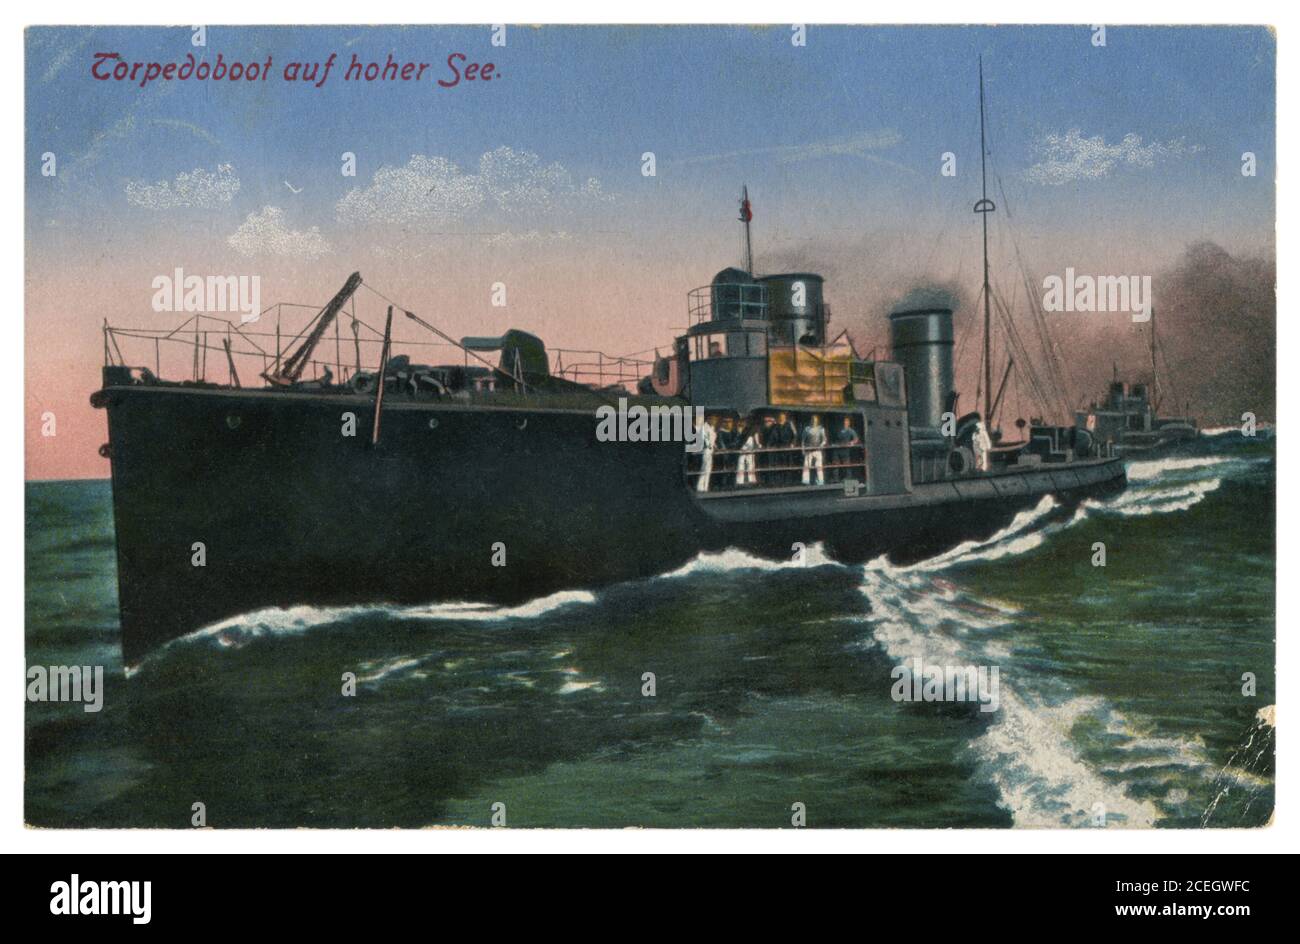 Cartolina fotografica colorata storica tedesca: Siluro su un'onda alta in mare aperto, Marina Imperiale tedesca, guerra mondiale 1914-1918. Foto Stock